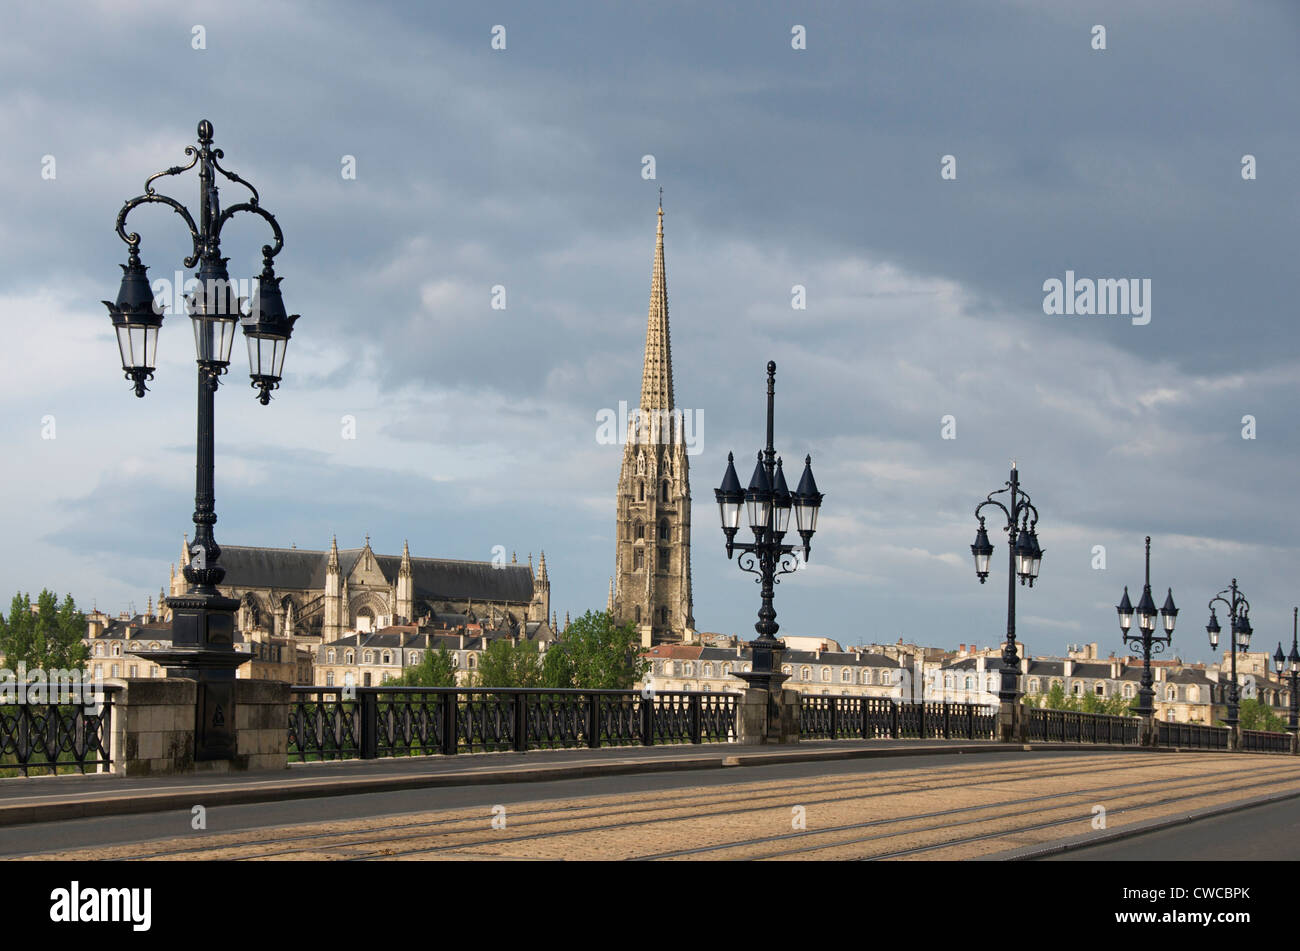 Bordeaux. The old bridge Pont de Pierre, tower of Saint Michel church, Nouvelle Aquitaine, Gironde, France Stock Photo